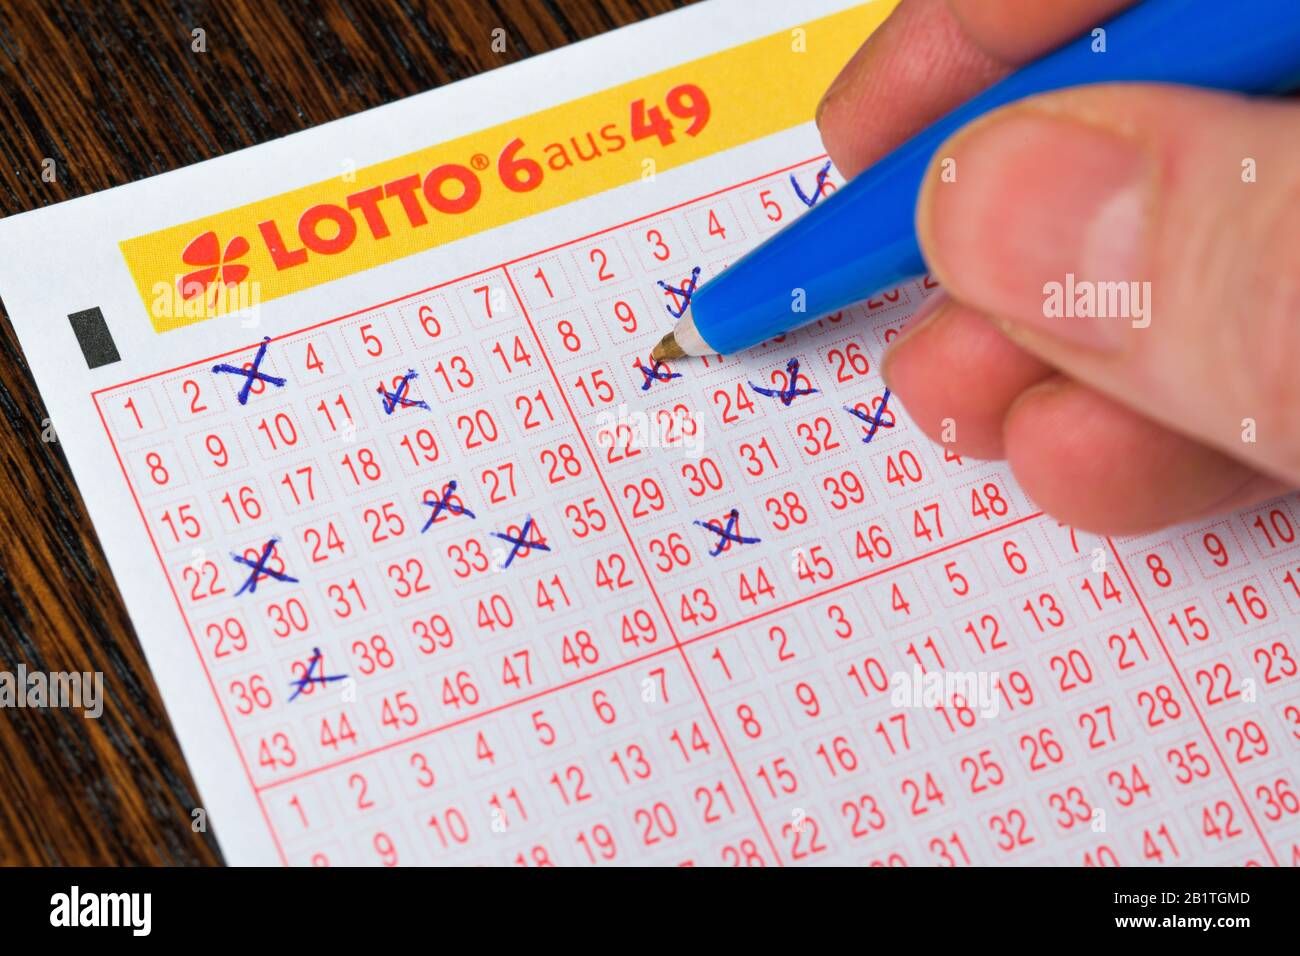 Der Lotto Jackpot wurde geknackt! Die Gewinnerin (24) aus Hannover verheimlicht ihren Gewinn vor der Familie!